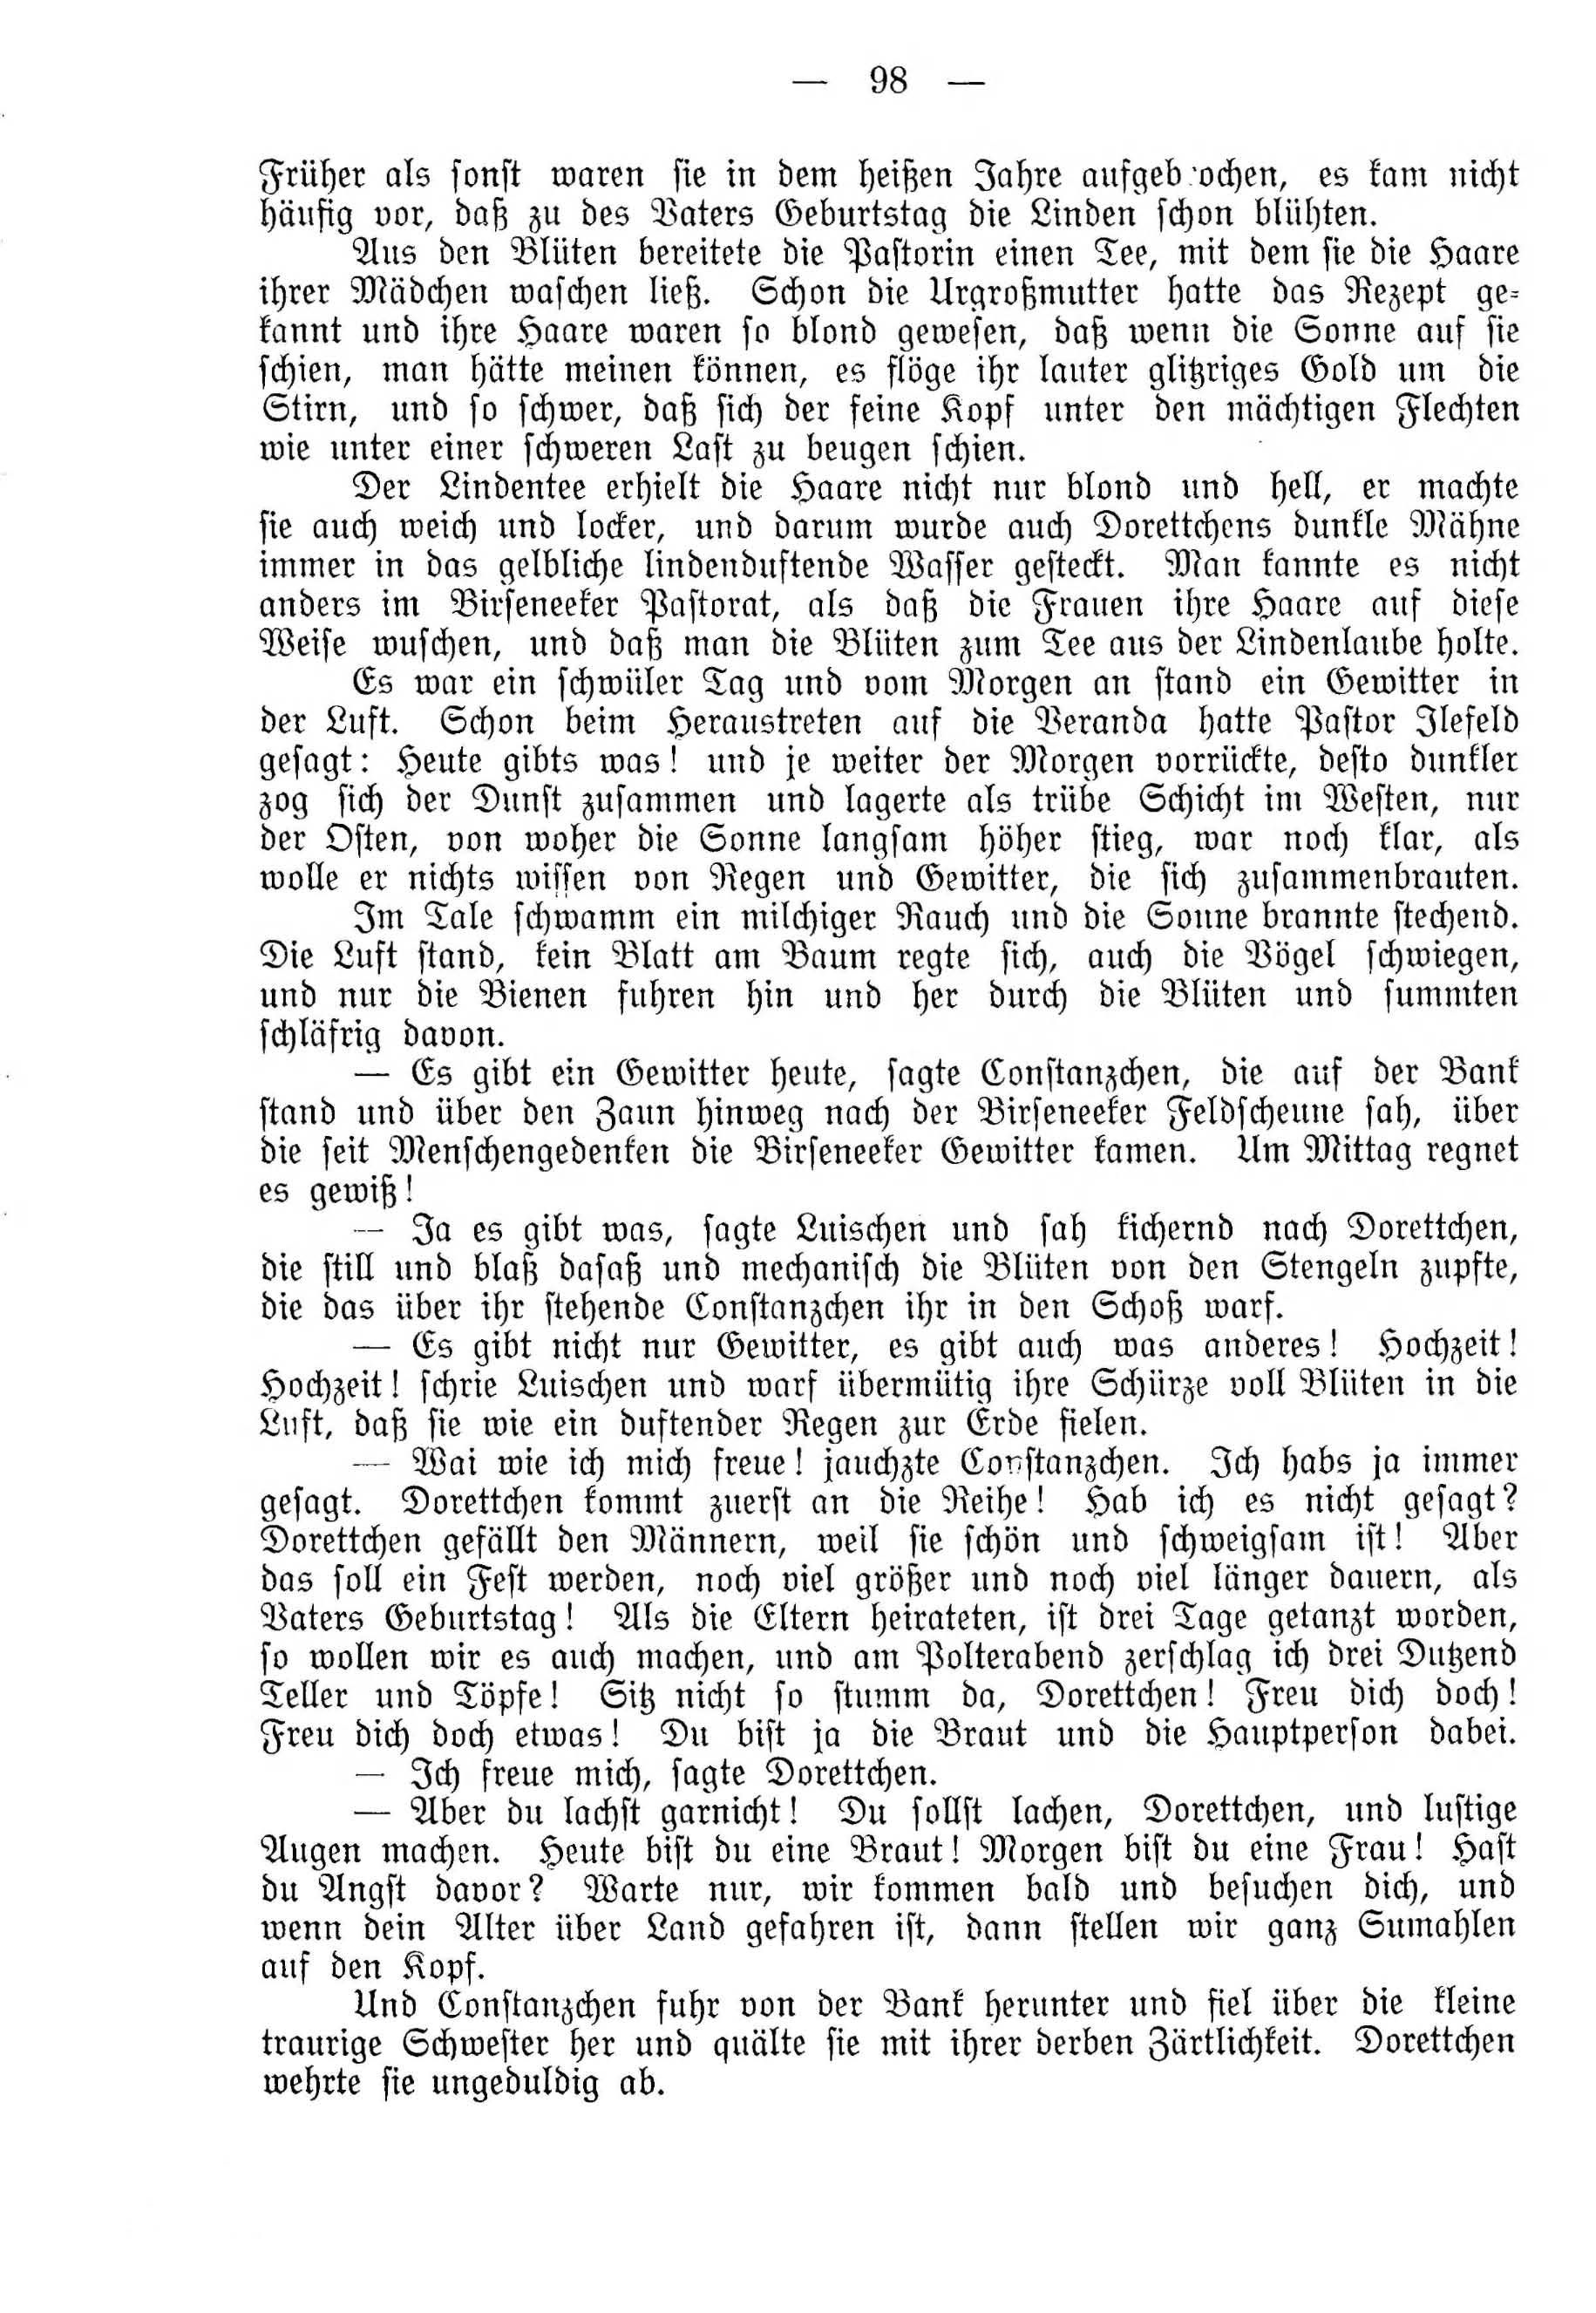 Deutsche Monatsschrift für Russland [4] (1915) | 98. (98) Main body of text